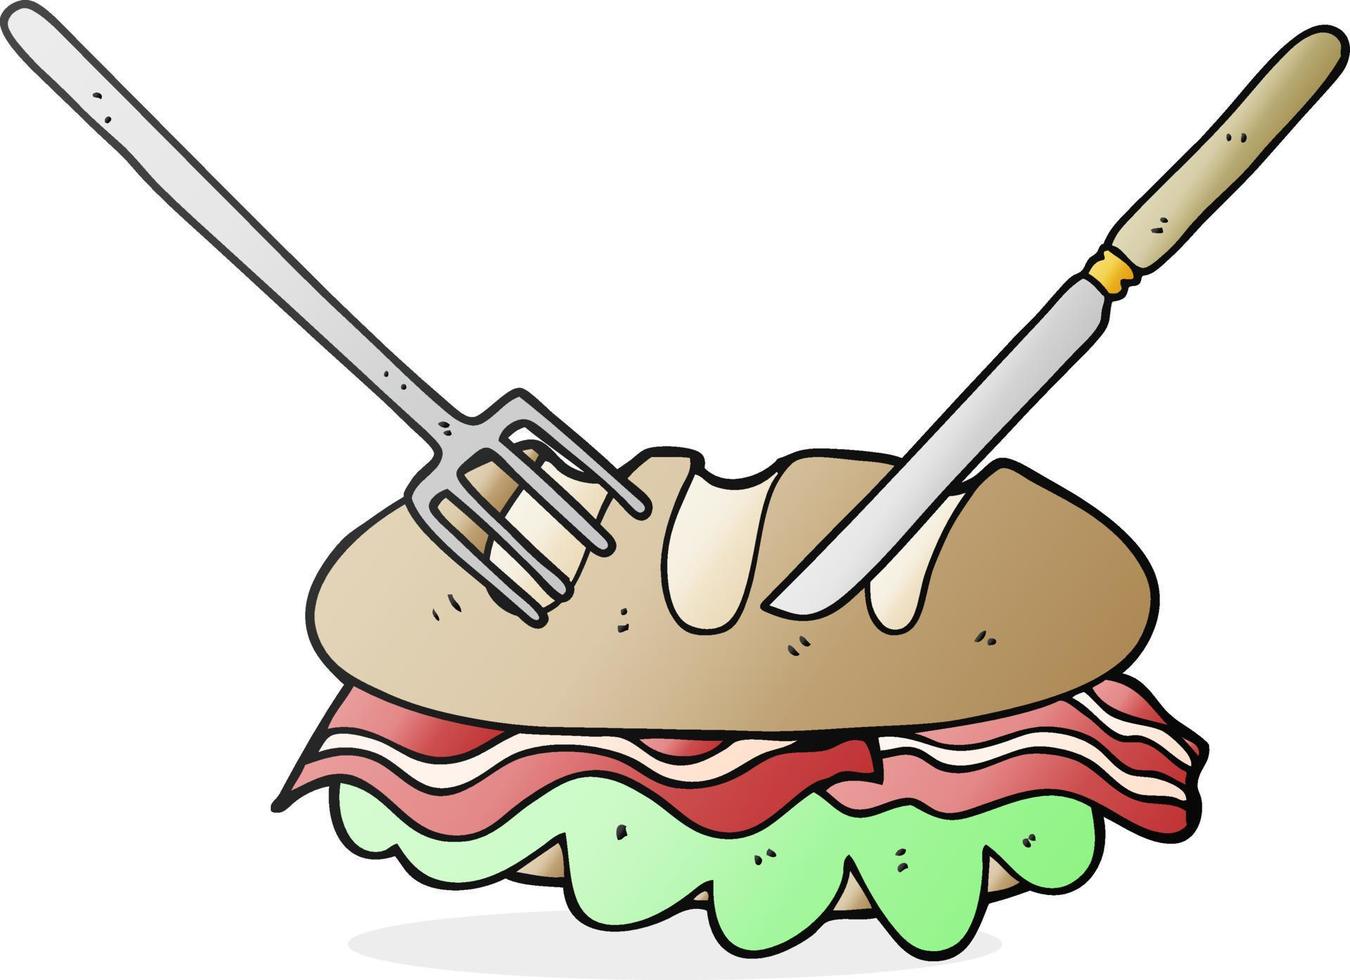 Cuchillo y tenedor de dibujos animados dibujados a mano alzada cortando un sándwich enorme vector